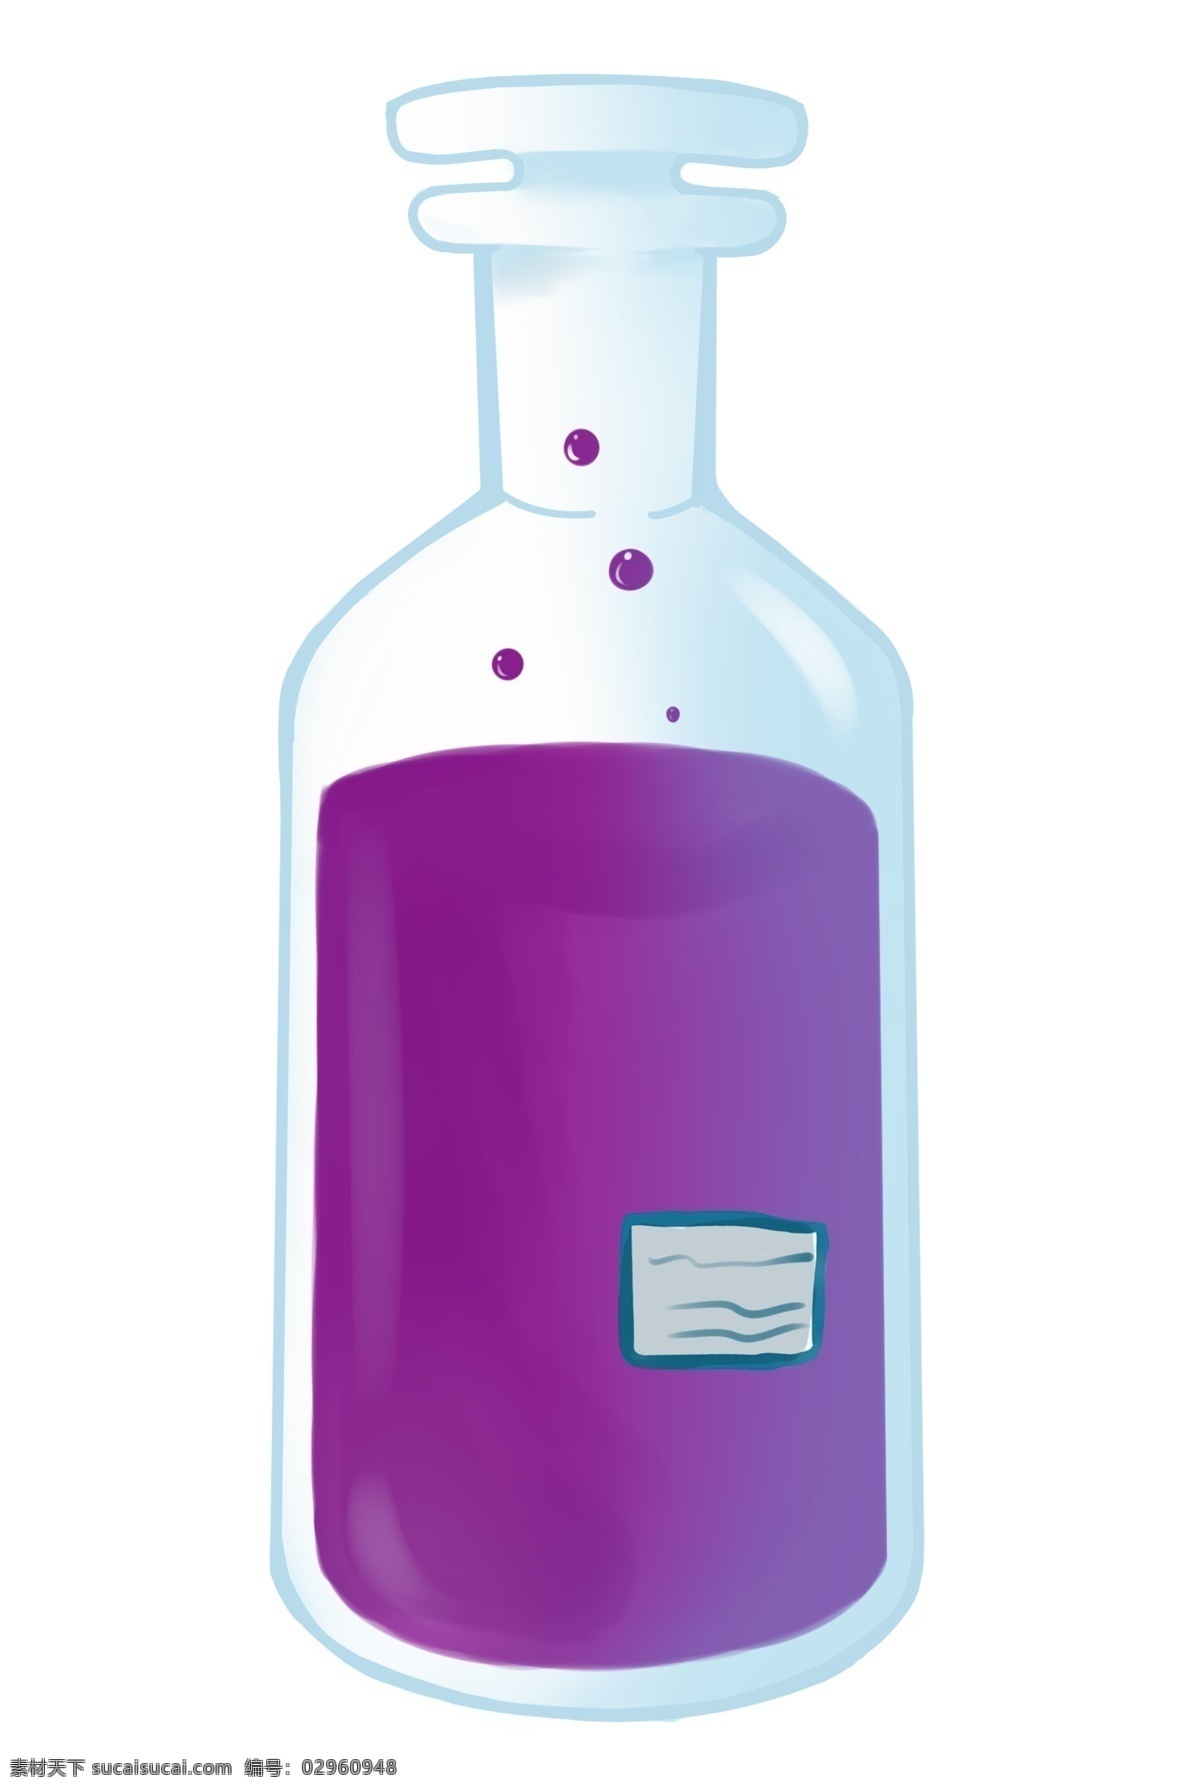 玻璃器皿 紫色 药物 紫色药物 紫色液体 玻璃容器 化学容器 化学器皿 化学实验 化学反应